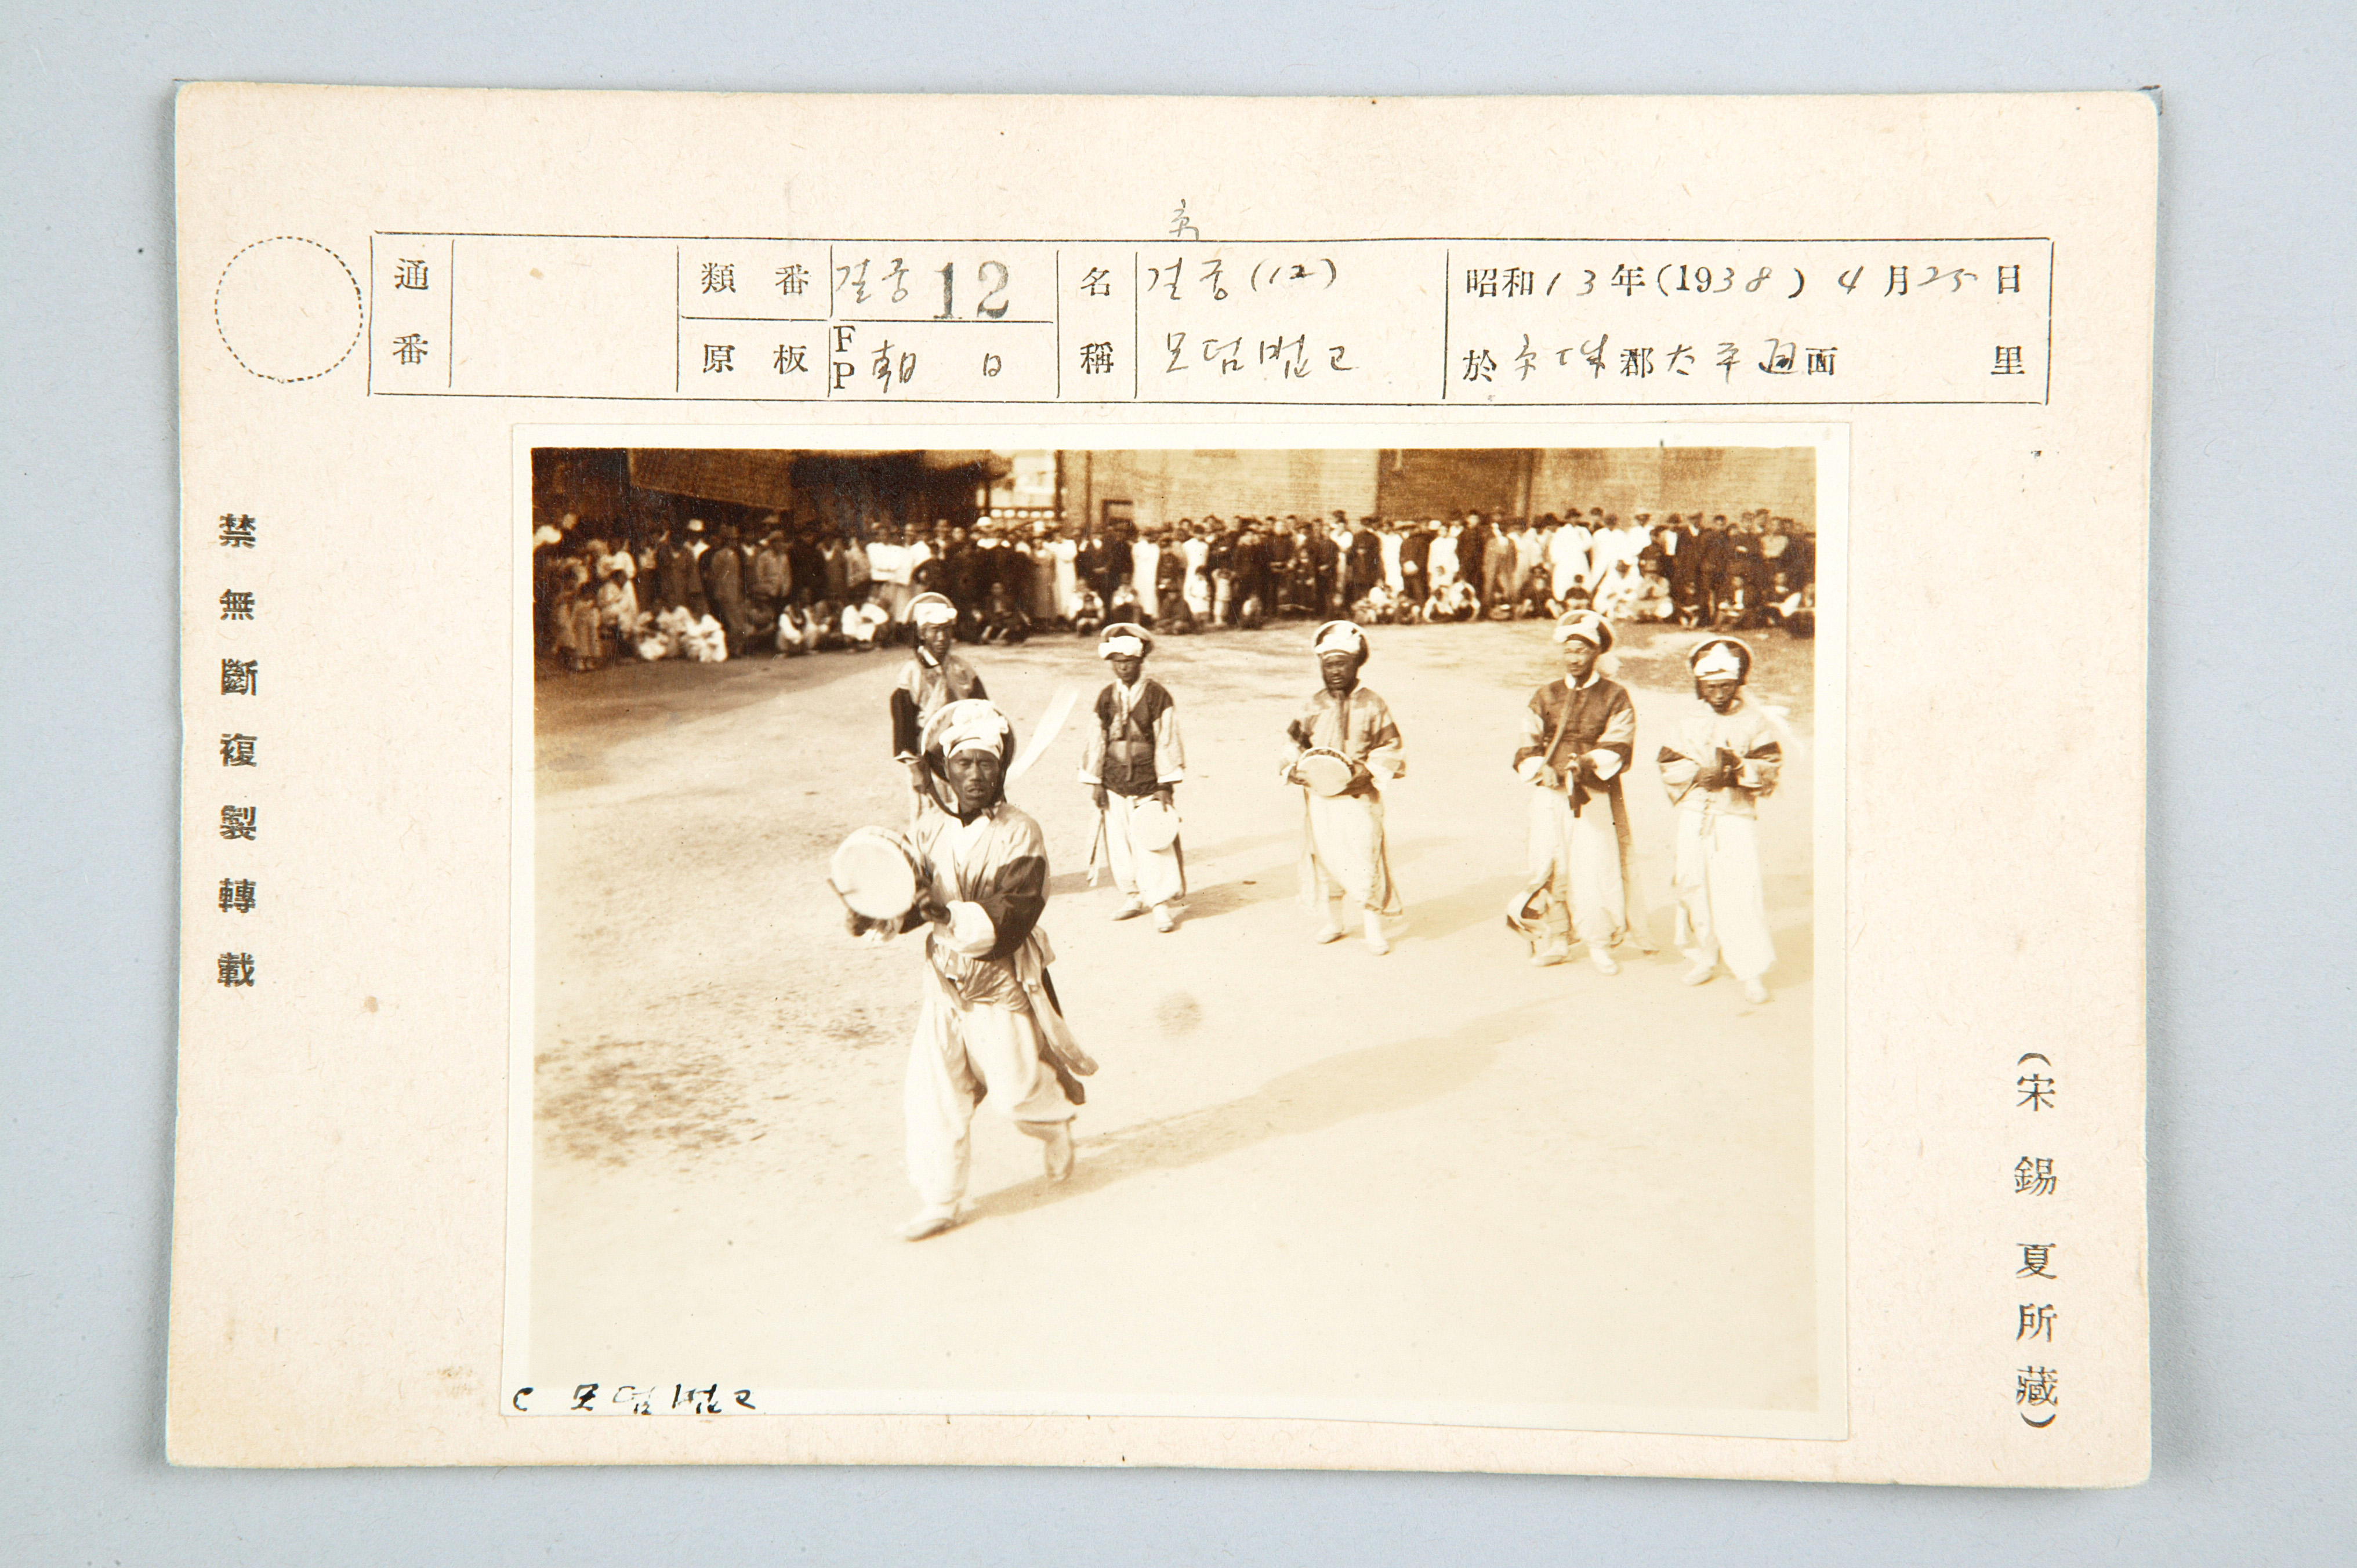 1938년도 농악대의 버꾸놀음 연행 장면의 사진이다.